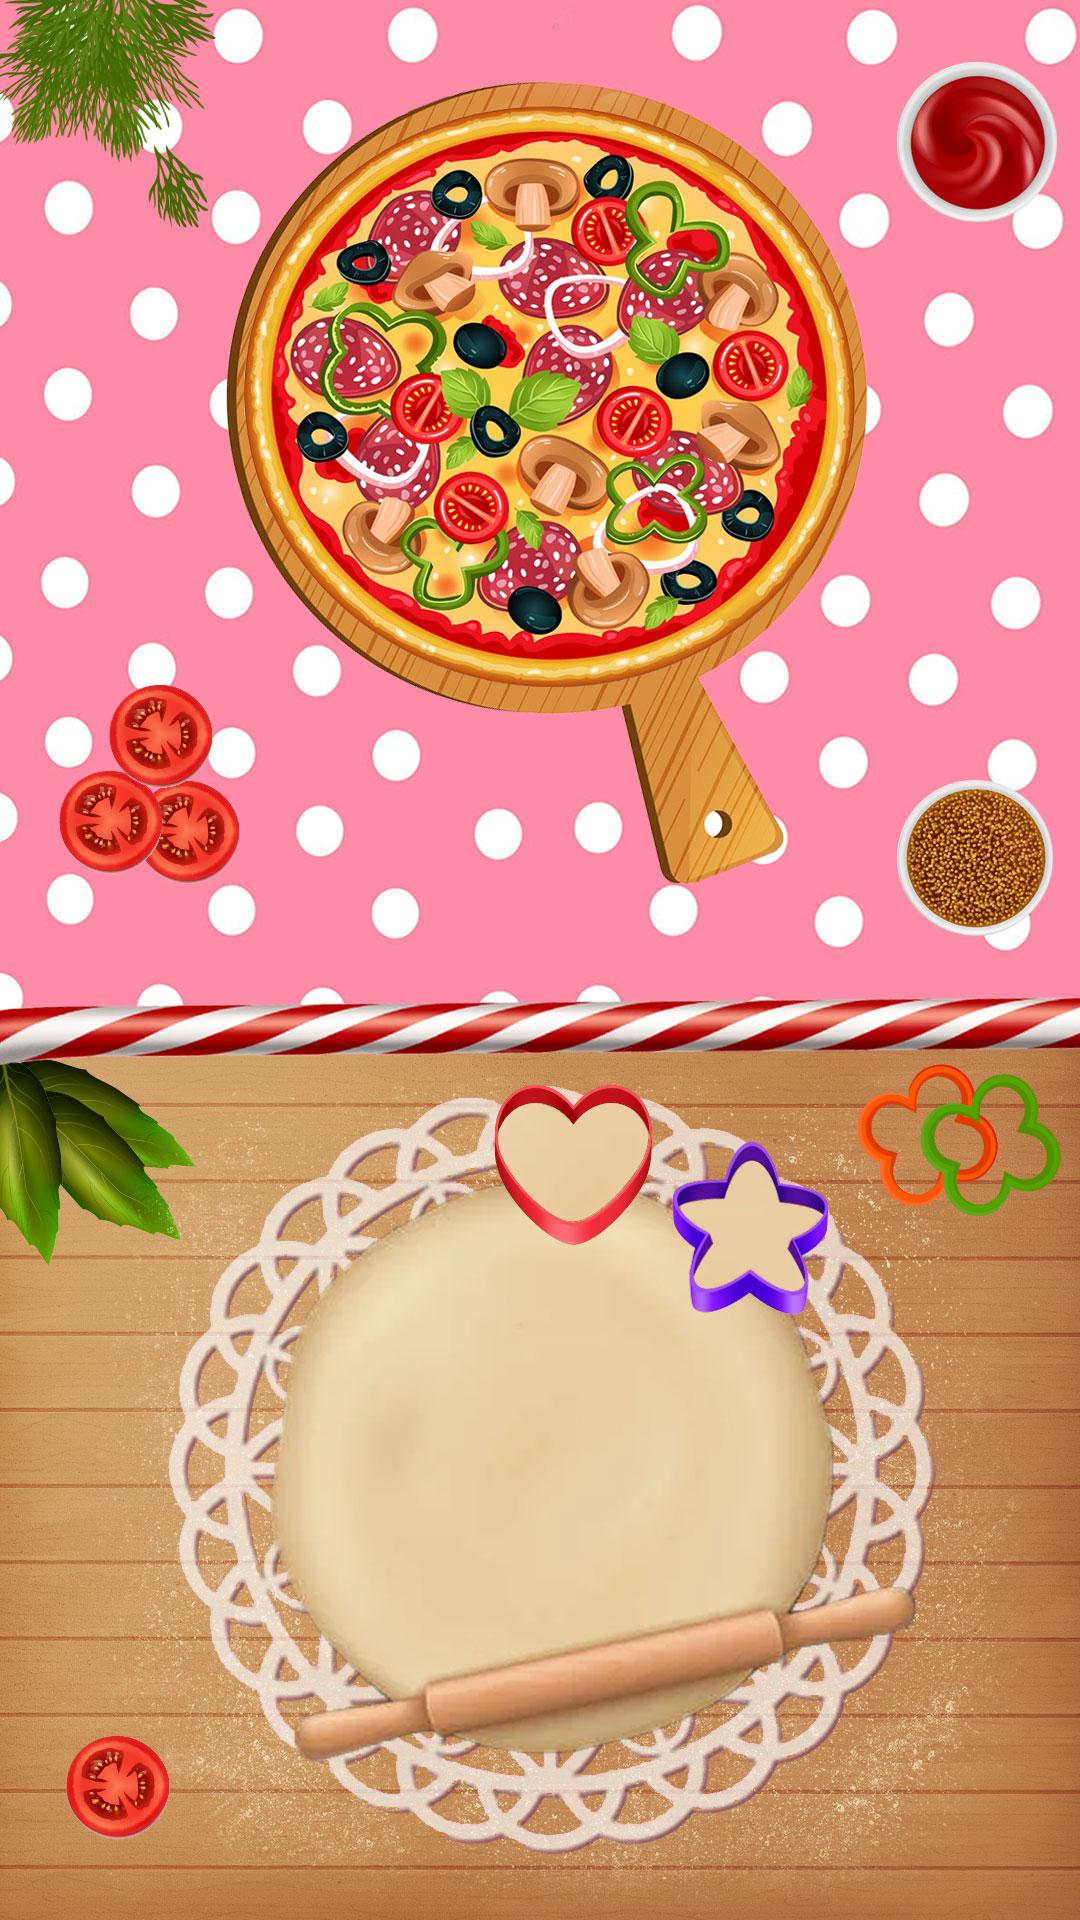 игра готовить пиццу скачать на андроид фото 70